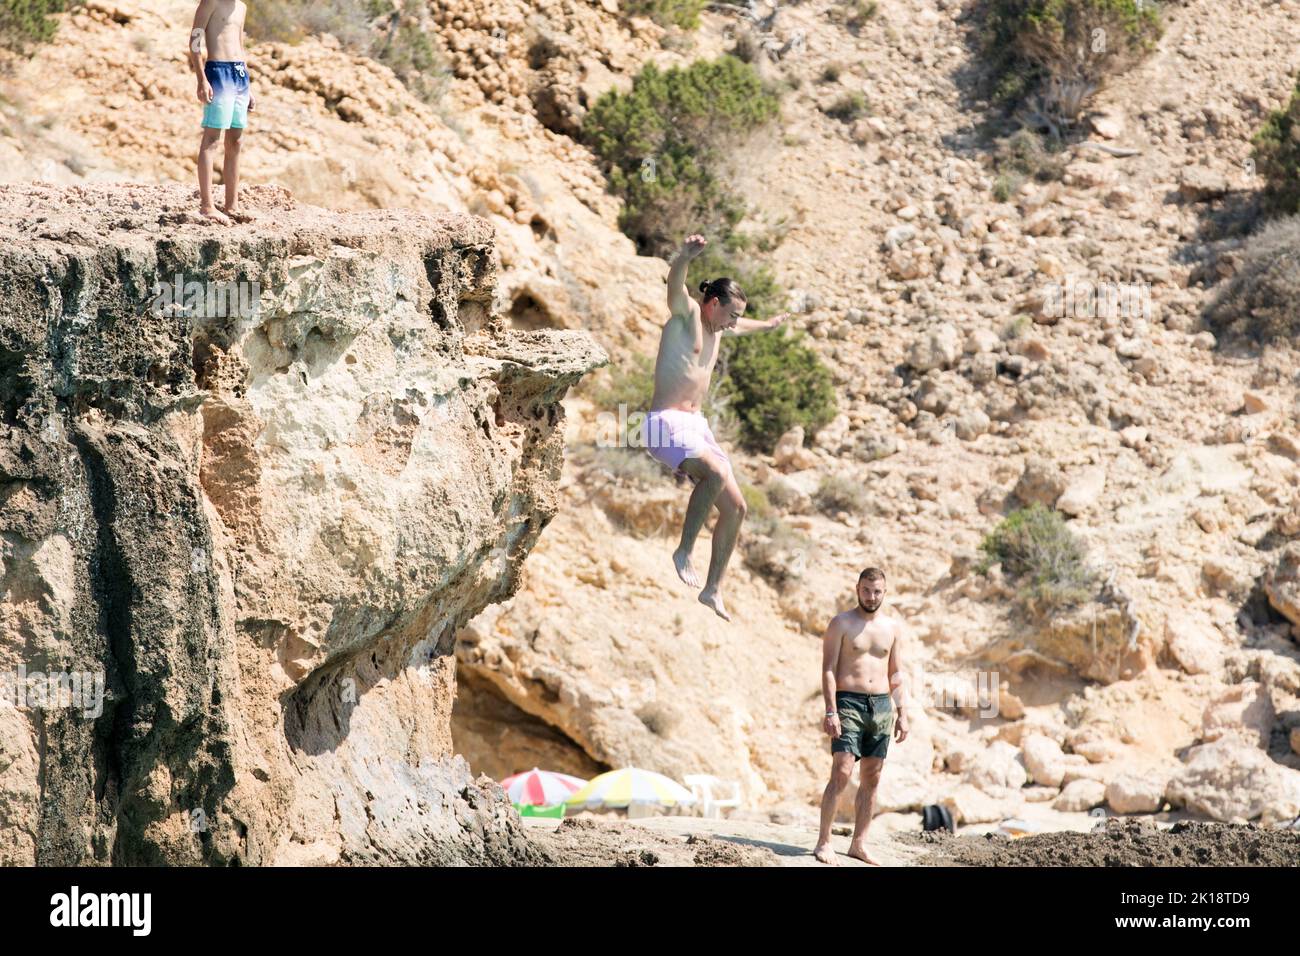 Urlauber auf der Insel Ibiza genießen es, von einem Felsen ins Meer zu springen. Die Insel hat viele tiefe Buchten und felsige Aufschlüsse. Stockfoto